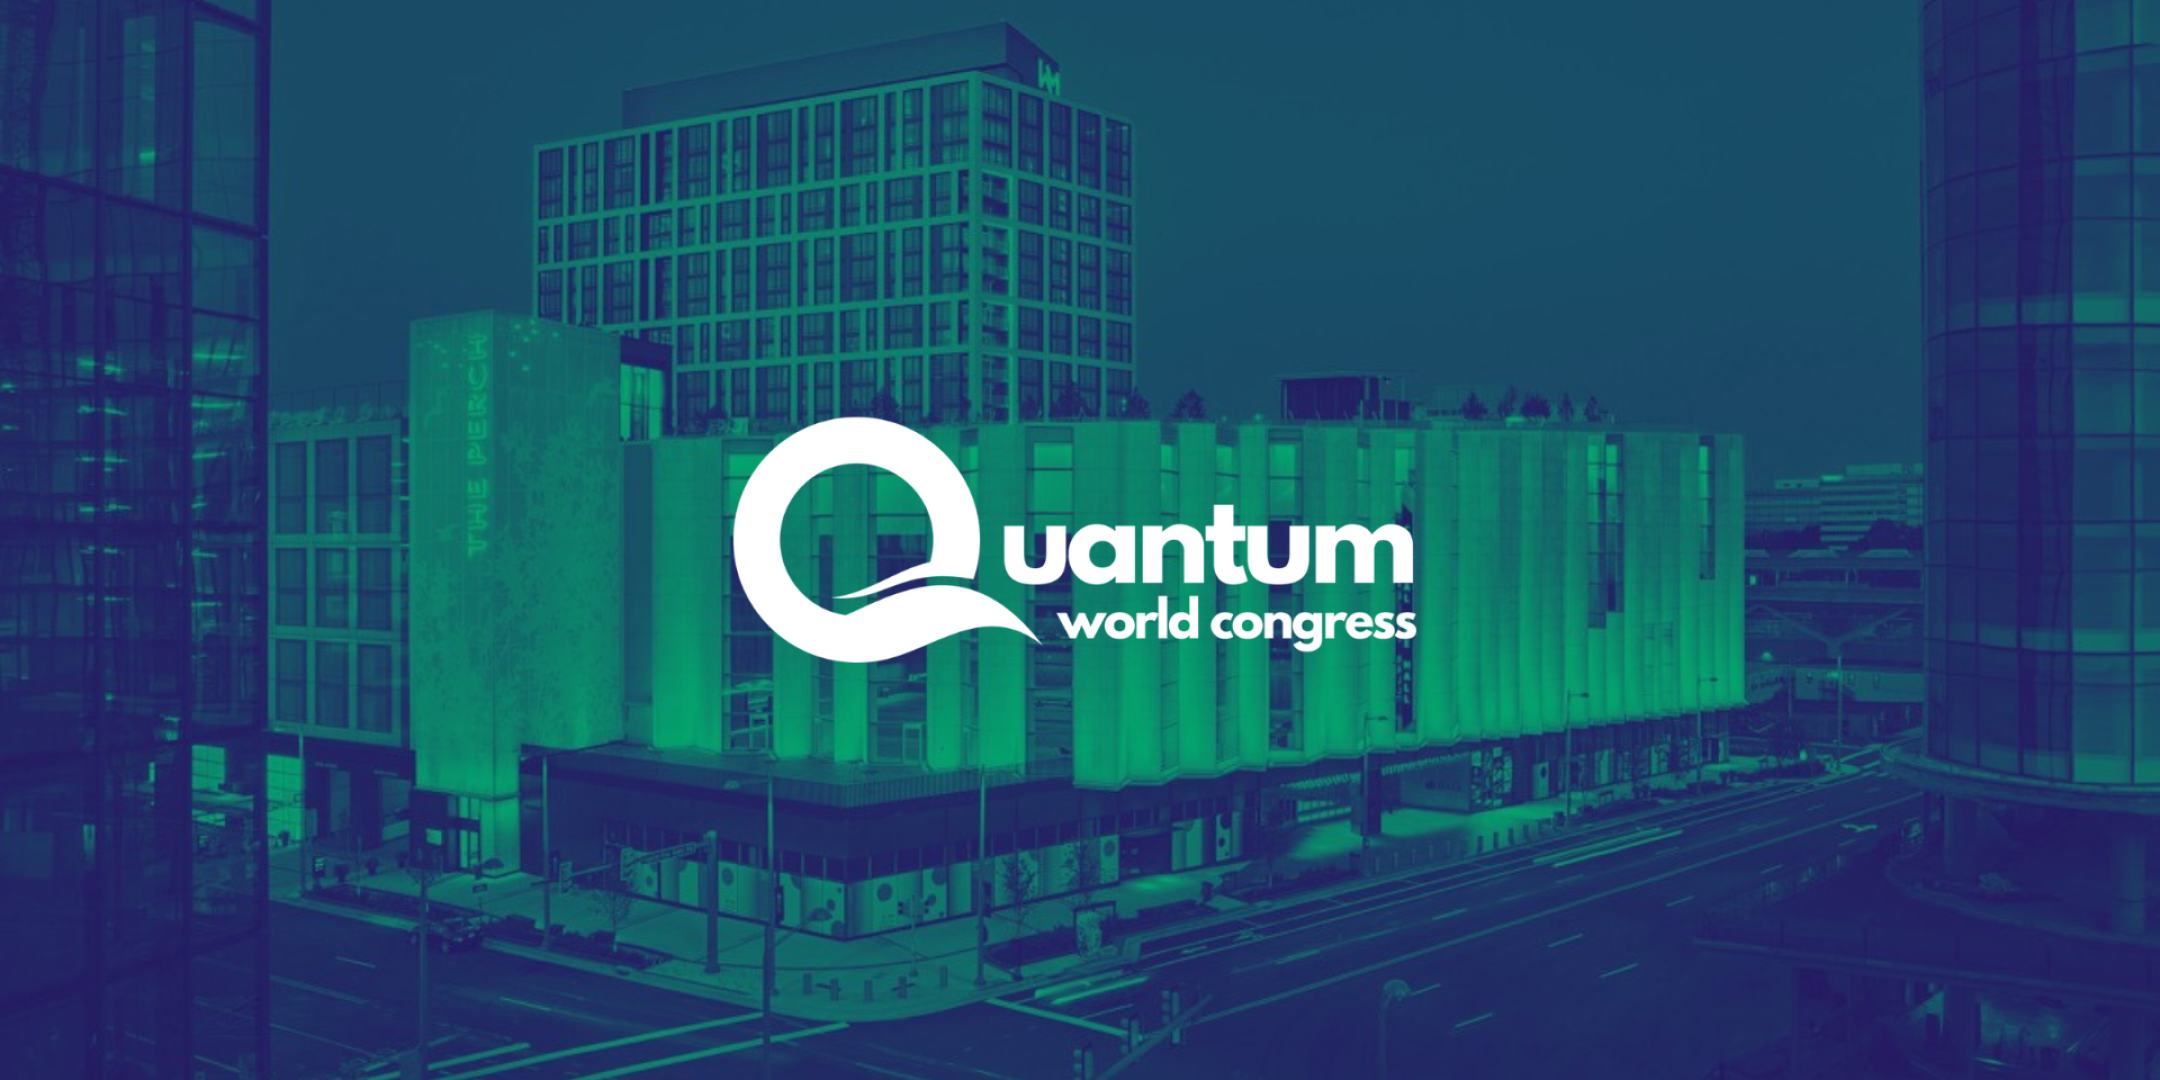 Affiche du Quantum World Congress. Credit: Connected DMV